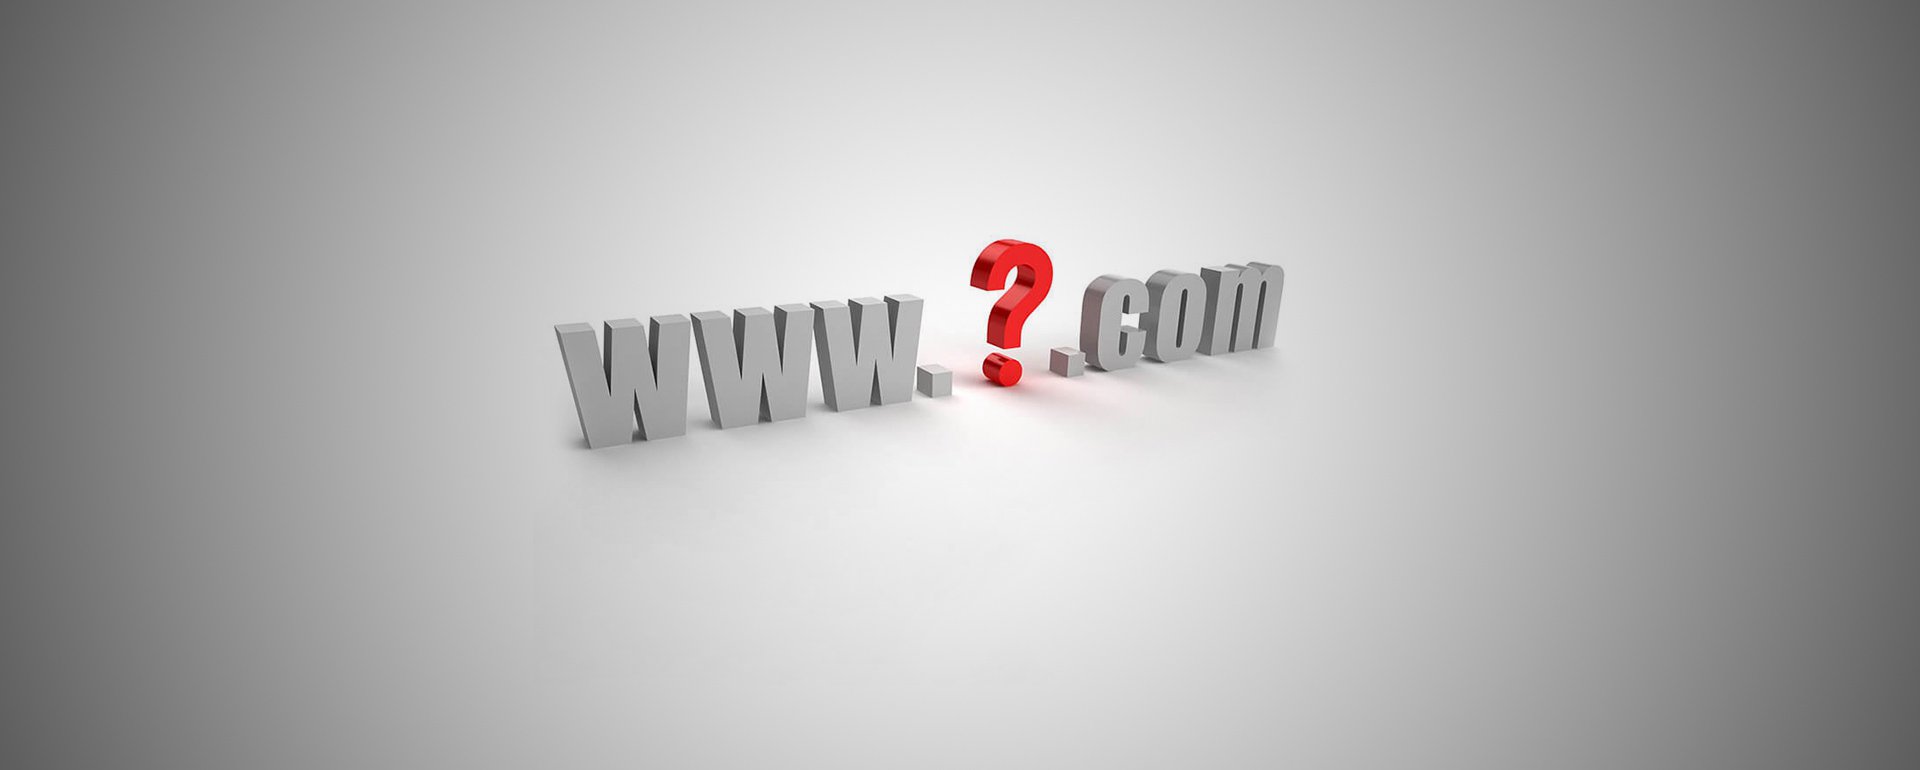 Как подобрать домен для сайта?